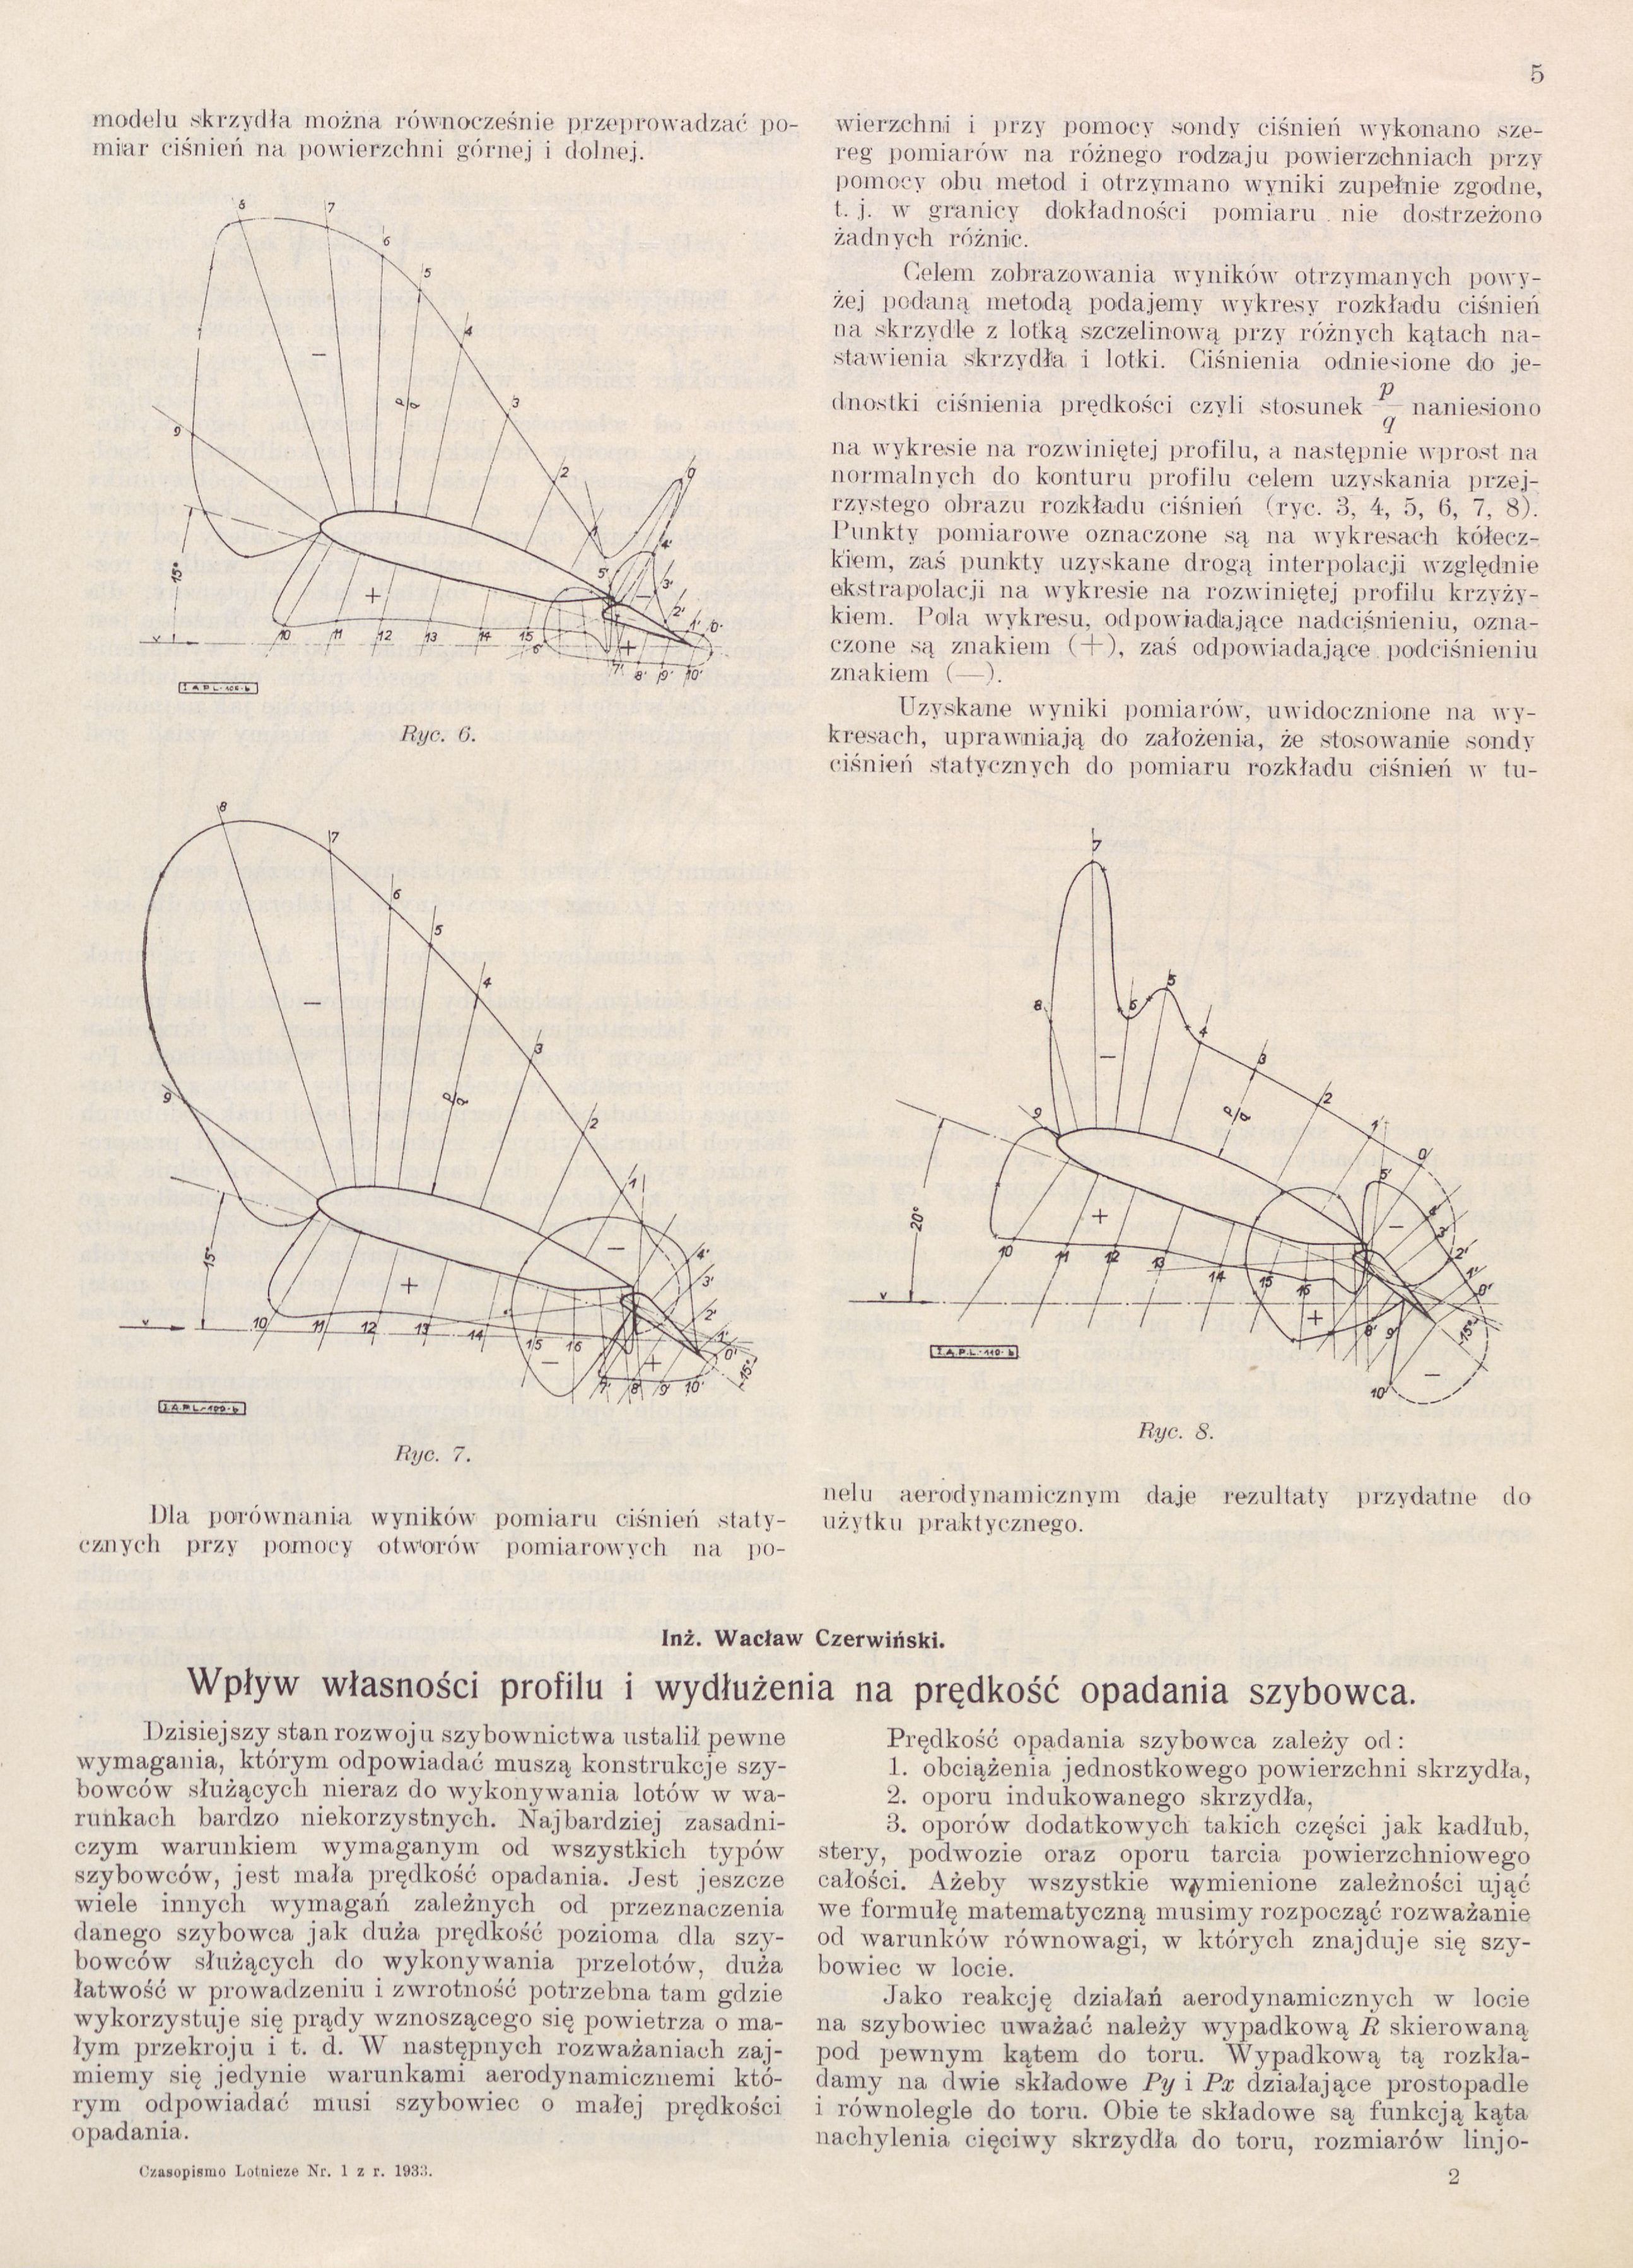 Czerwiński W. Wplyw własności profilu i wydłużenia na prędkość opadania szybowca